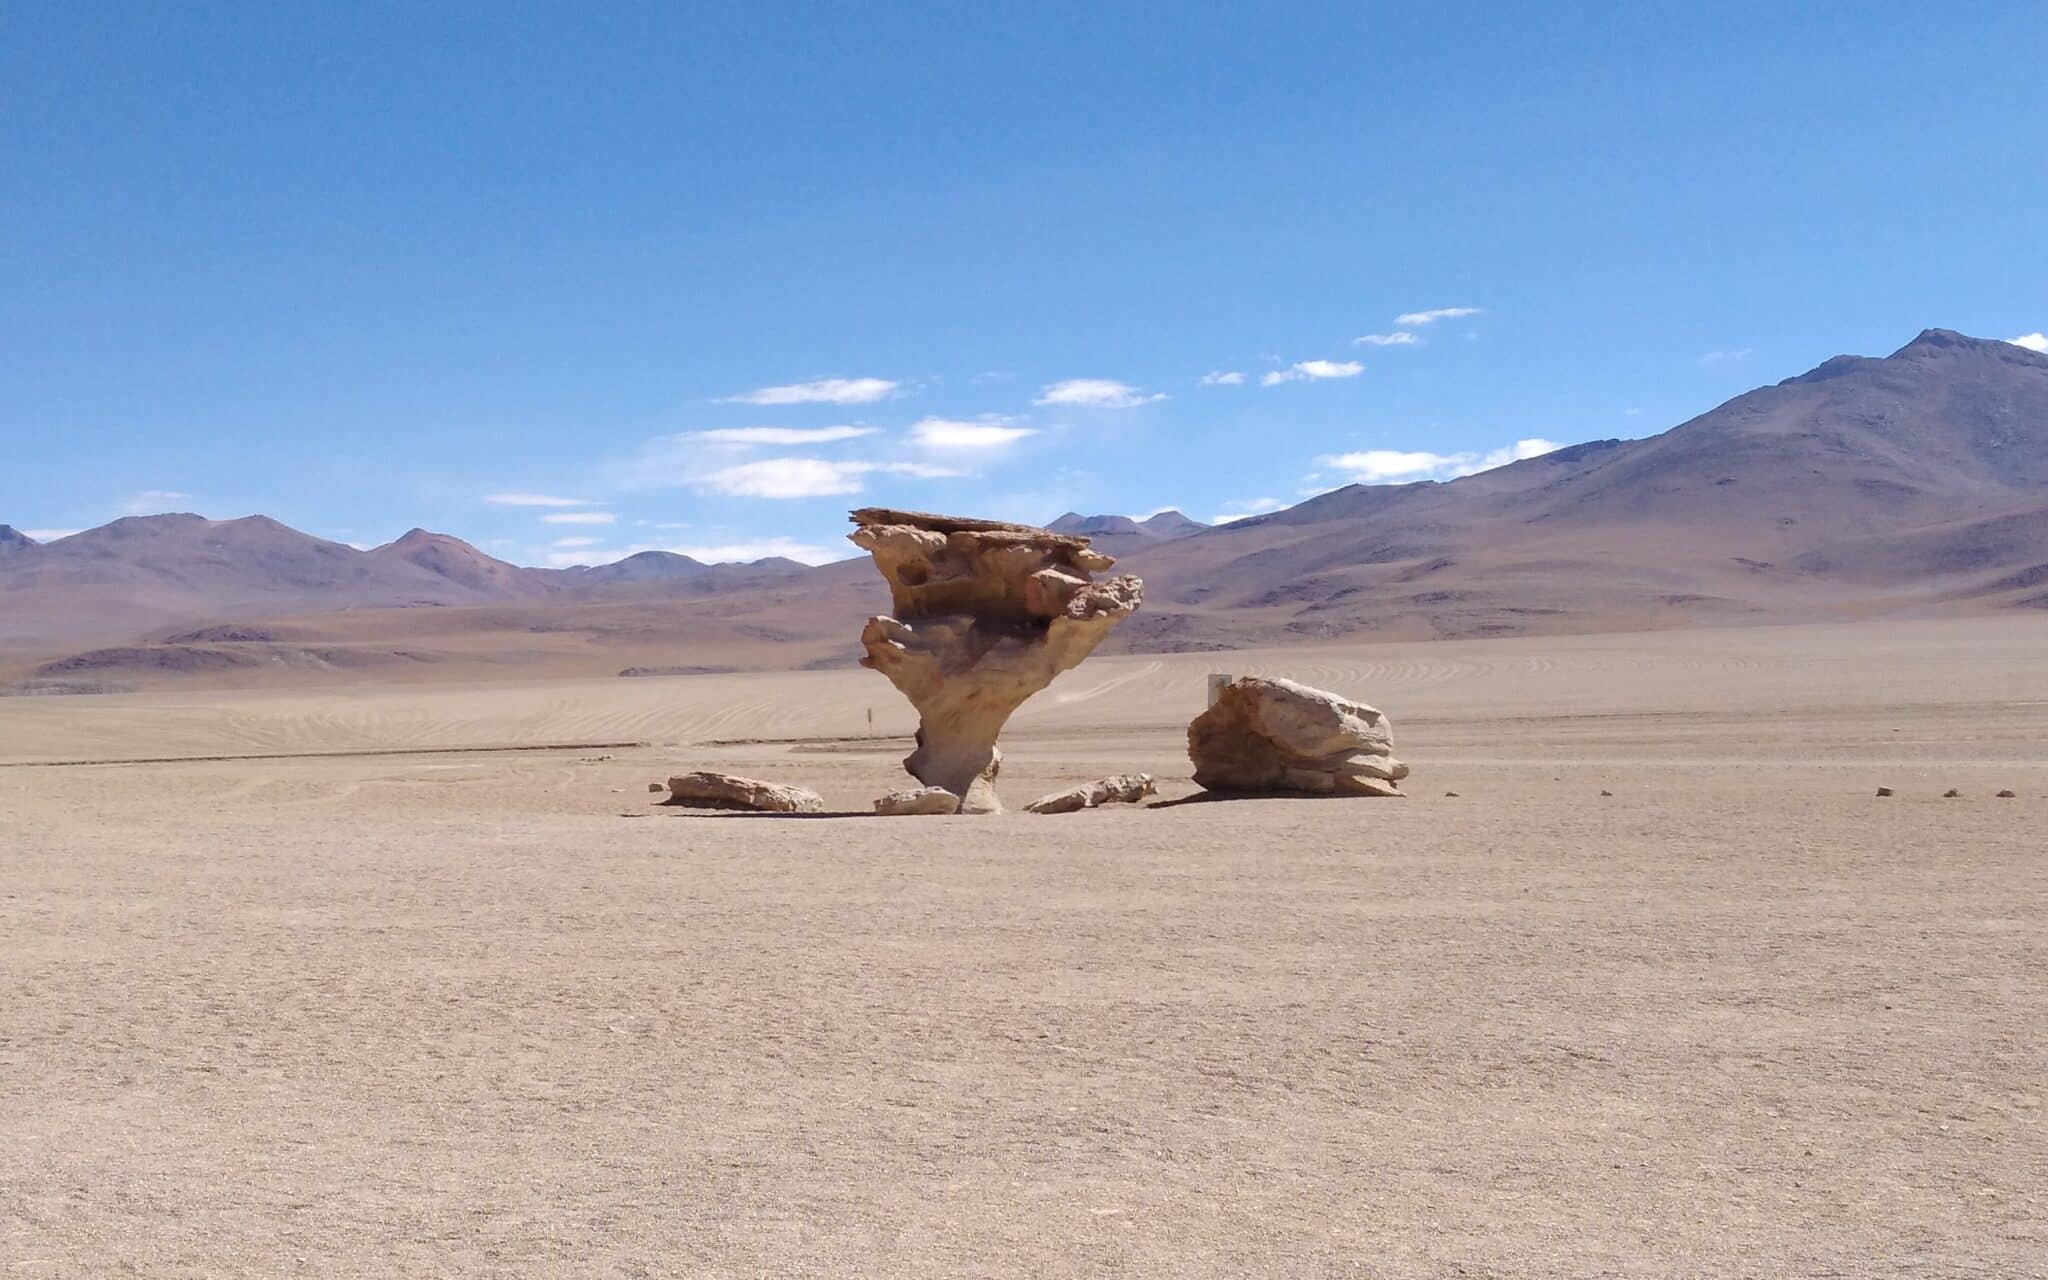 Der Baum aus Stein, eine Felsskulptur inmitten der Wüste, die durch Erosion natürlich geformt wurde.